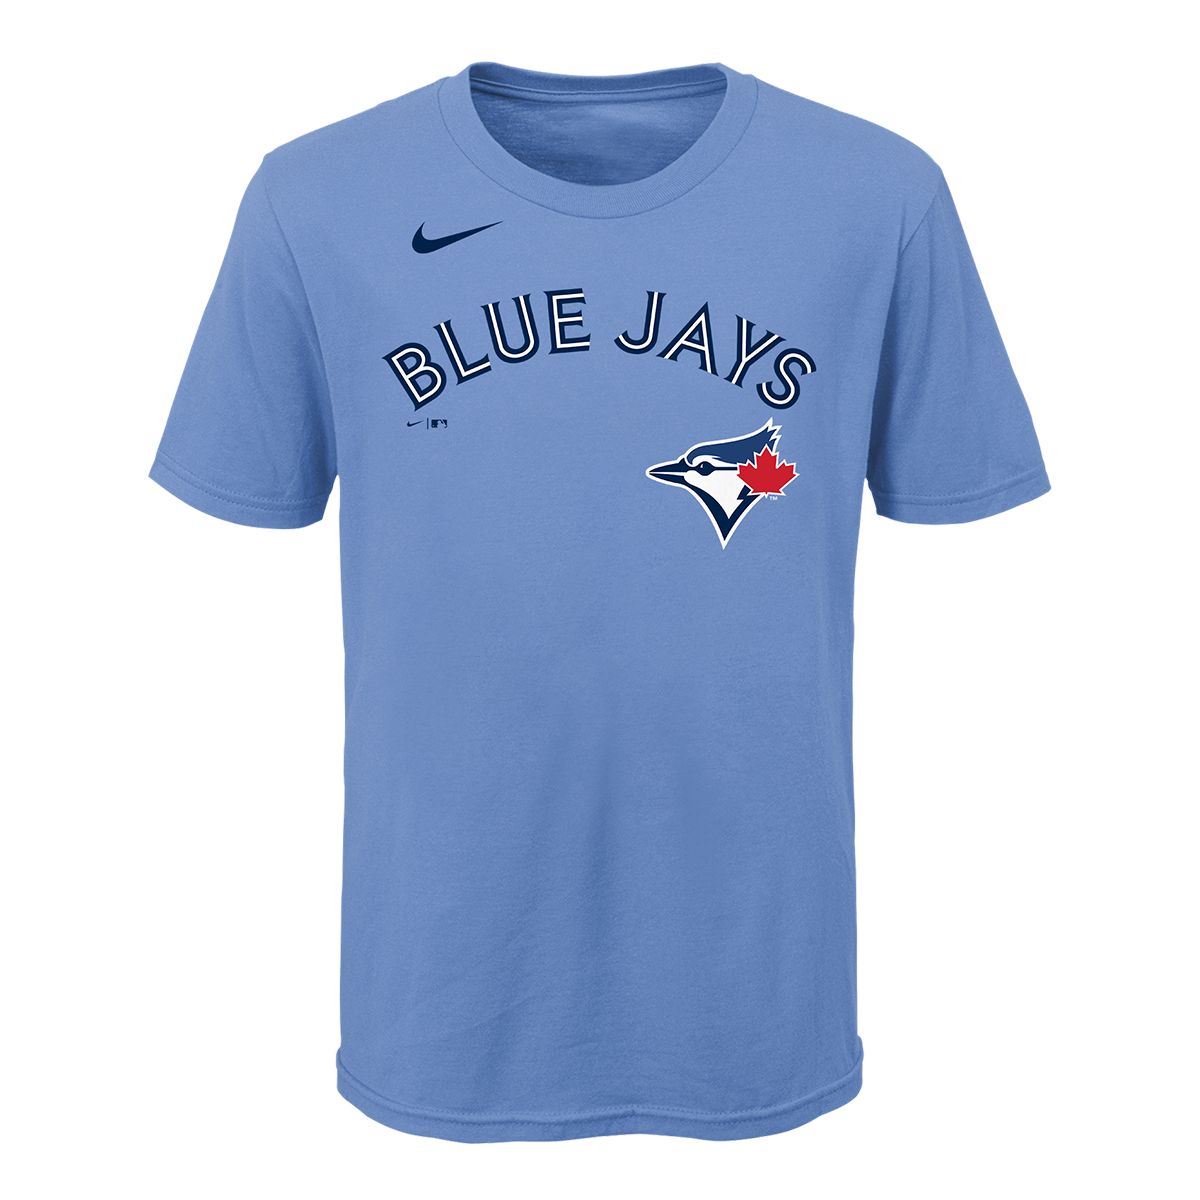 Toronto Blue Jays Nike Bo Bichette Jersey, Baby, Baseball, MLB